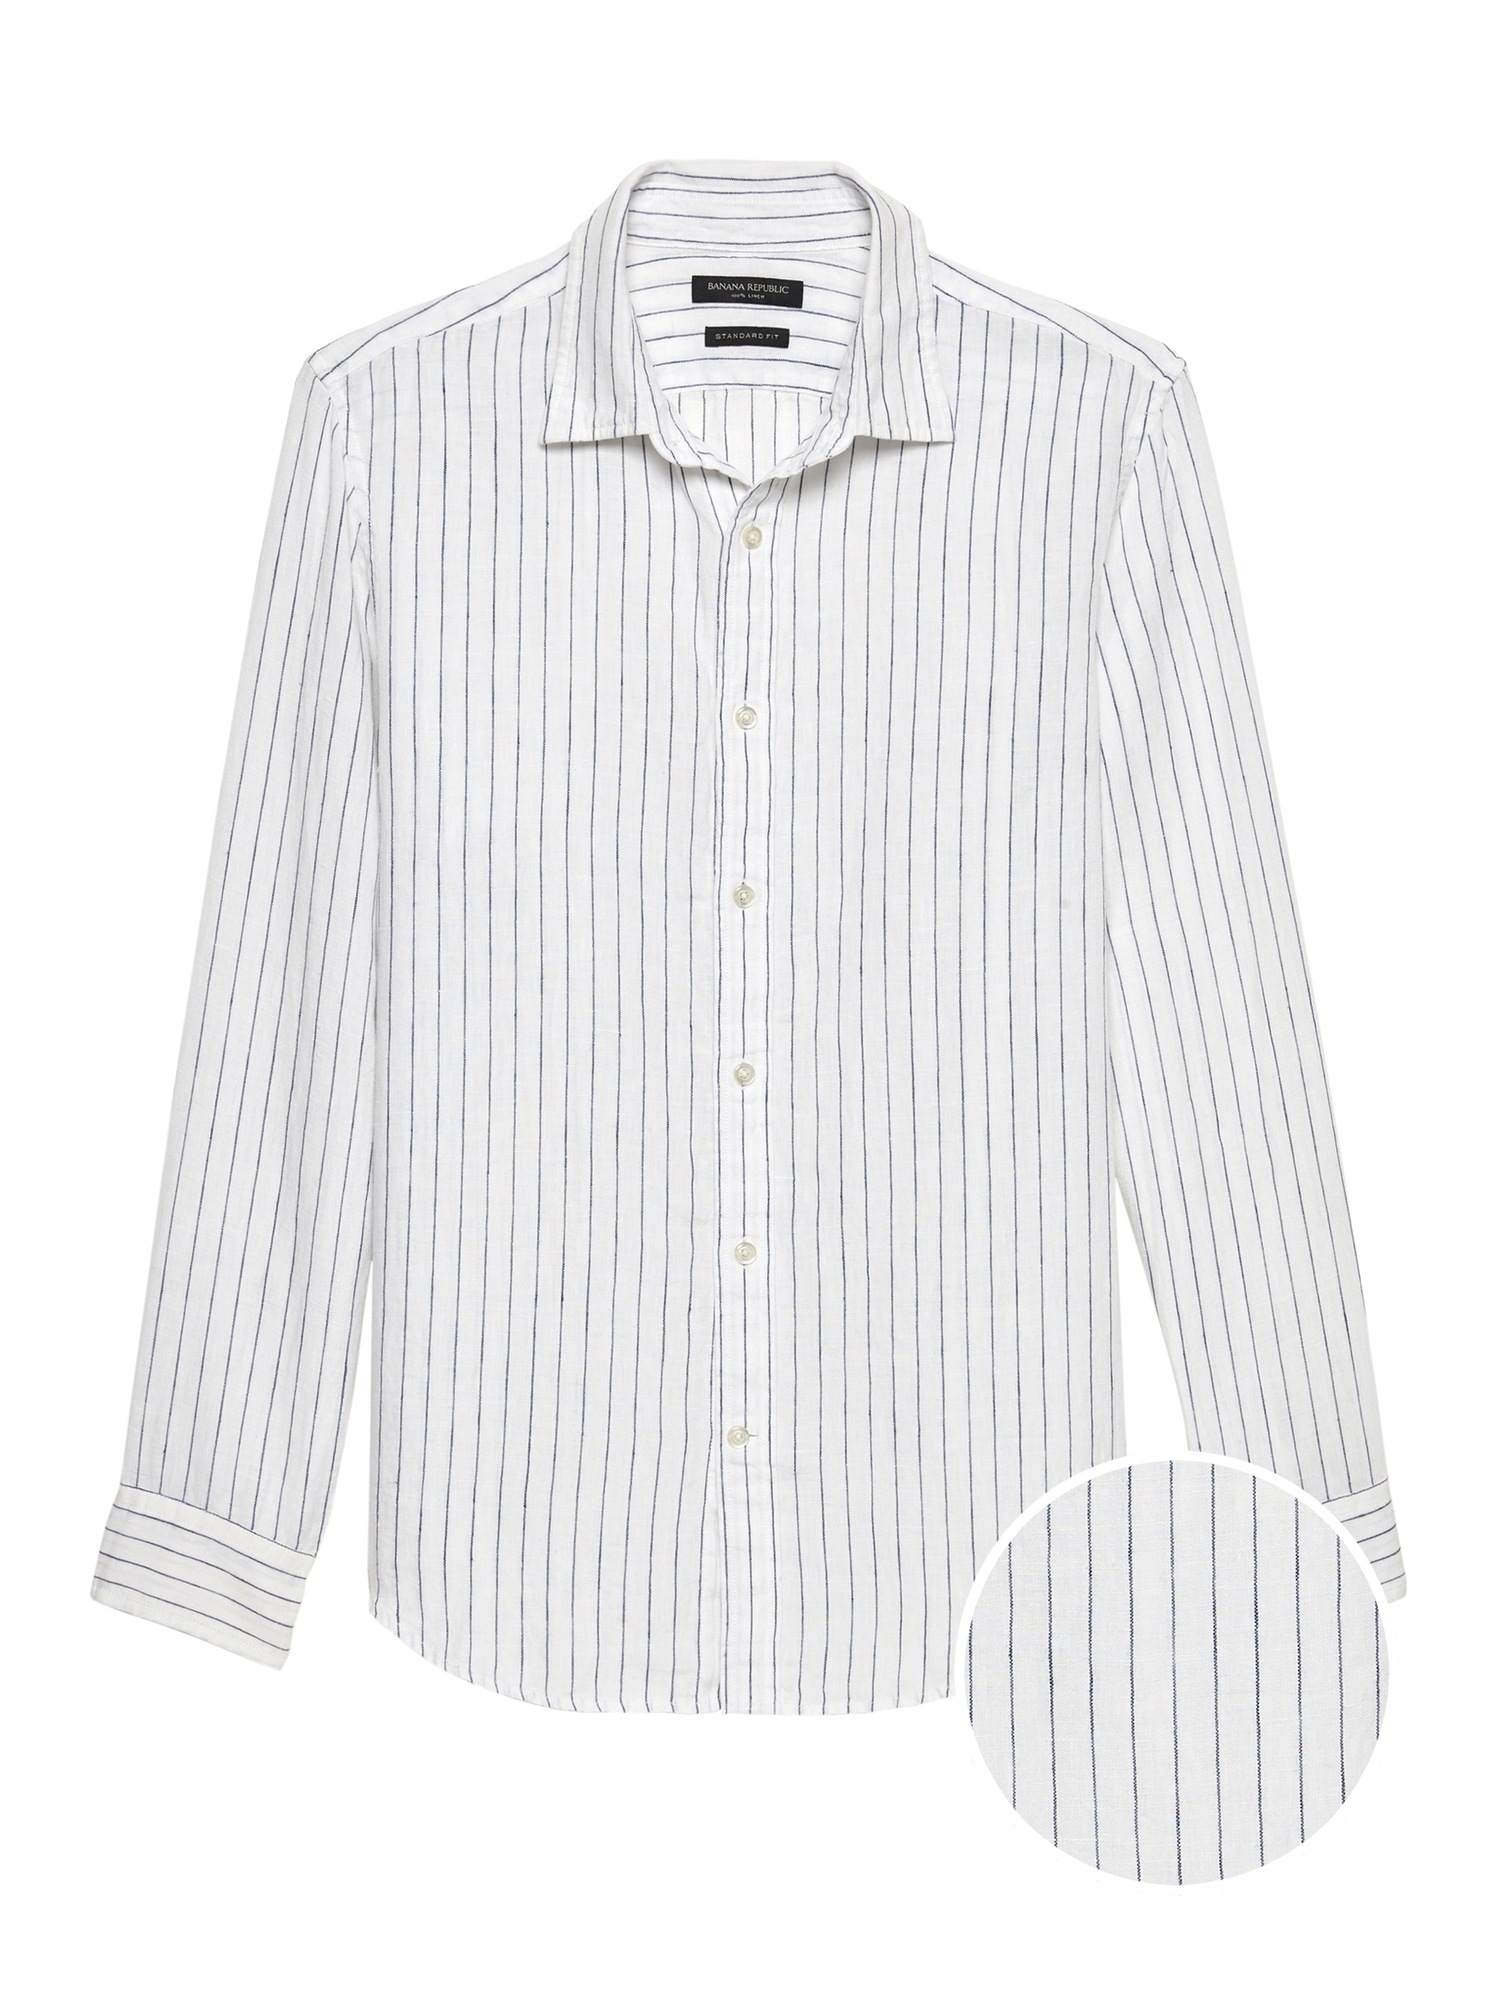 Standard-Fit Linen Shirt